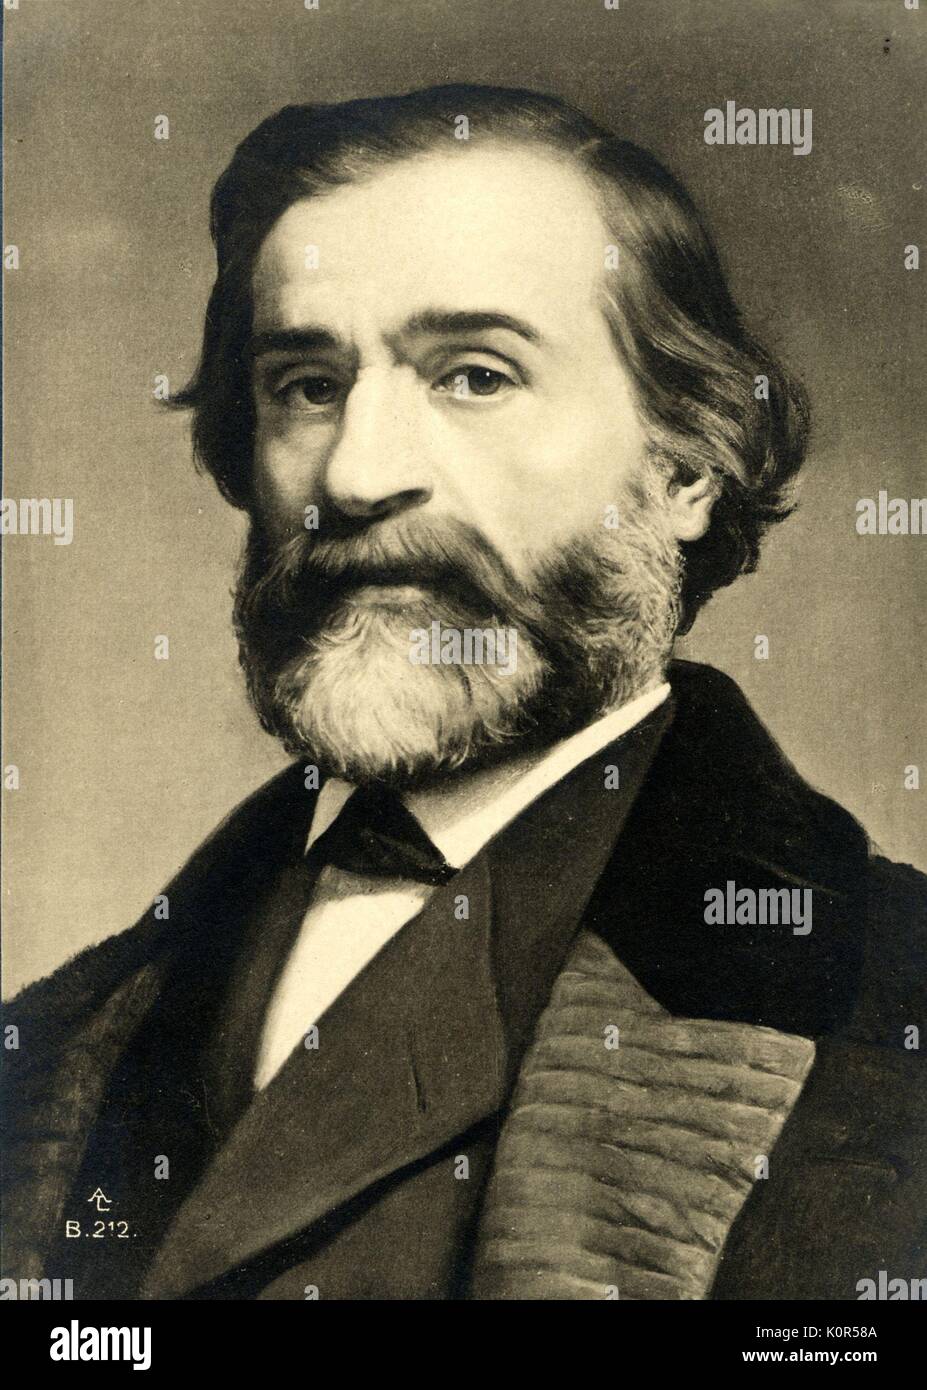 Giusepppe Verdi - portrait. Italian composer,  9 or 10 October 1813 - 27 January 1901. Stock Photo